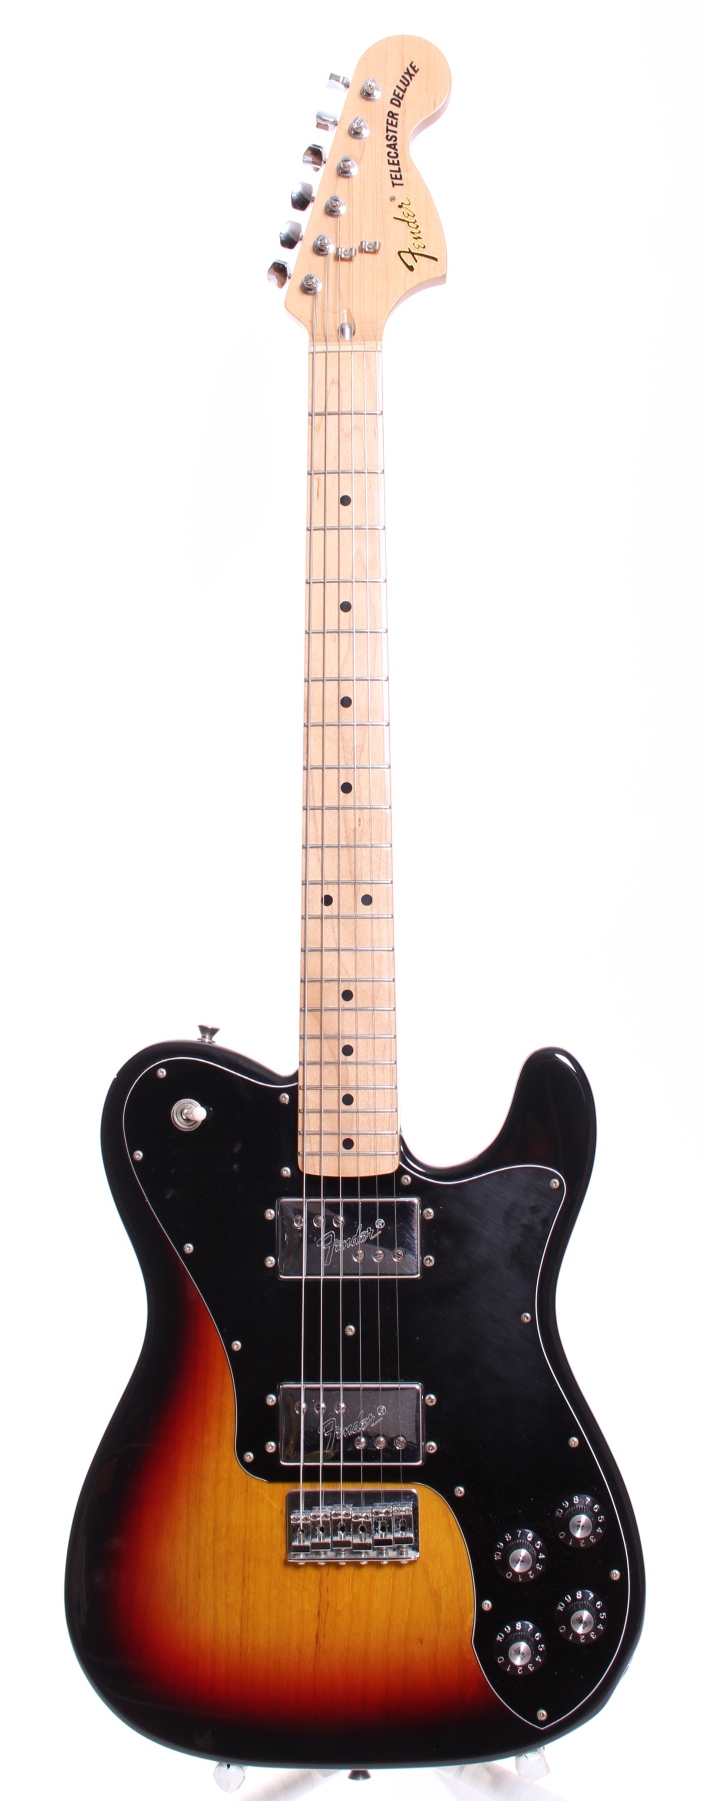 Fender Japan Telecaster Deluxe 2010 Sunburst Guitar For Sale Yeahman's